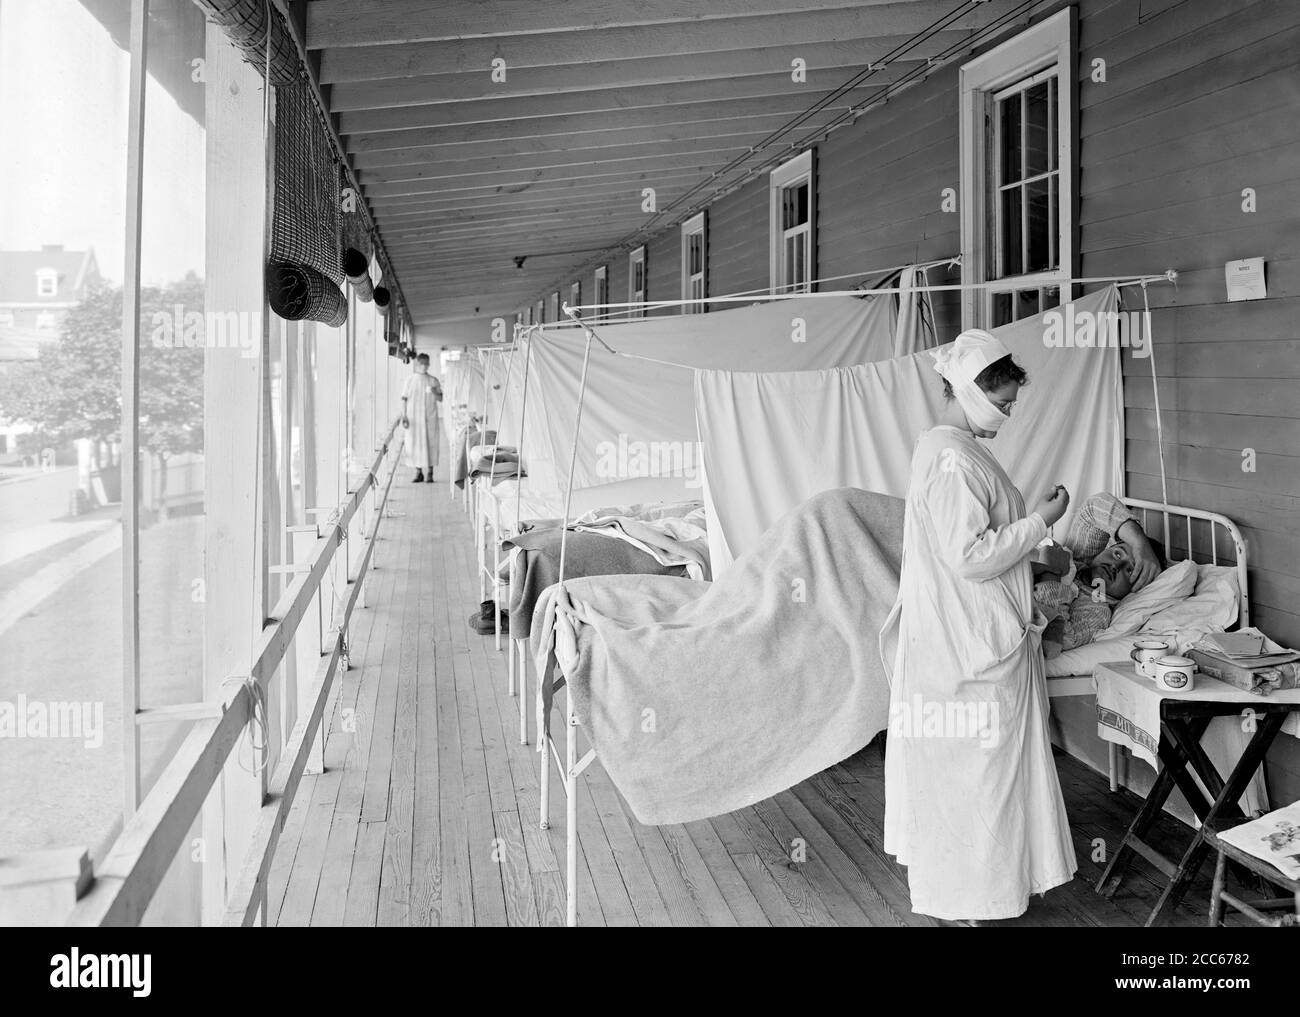 Service de grippe à l'hôpital Walter Reed de Washington DC pendant la pandémie de grippe espagnole de 1918. Photographie de Harris et Ewing, novembre 1918. Banque D'Images